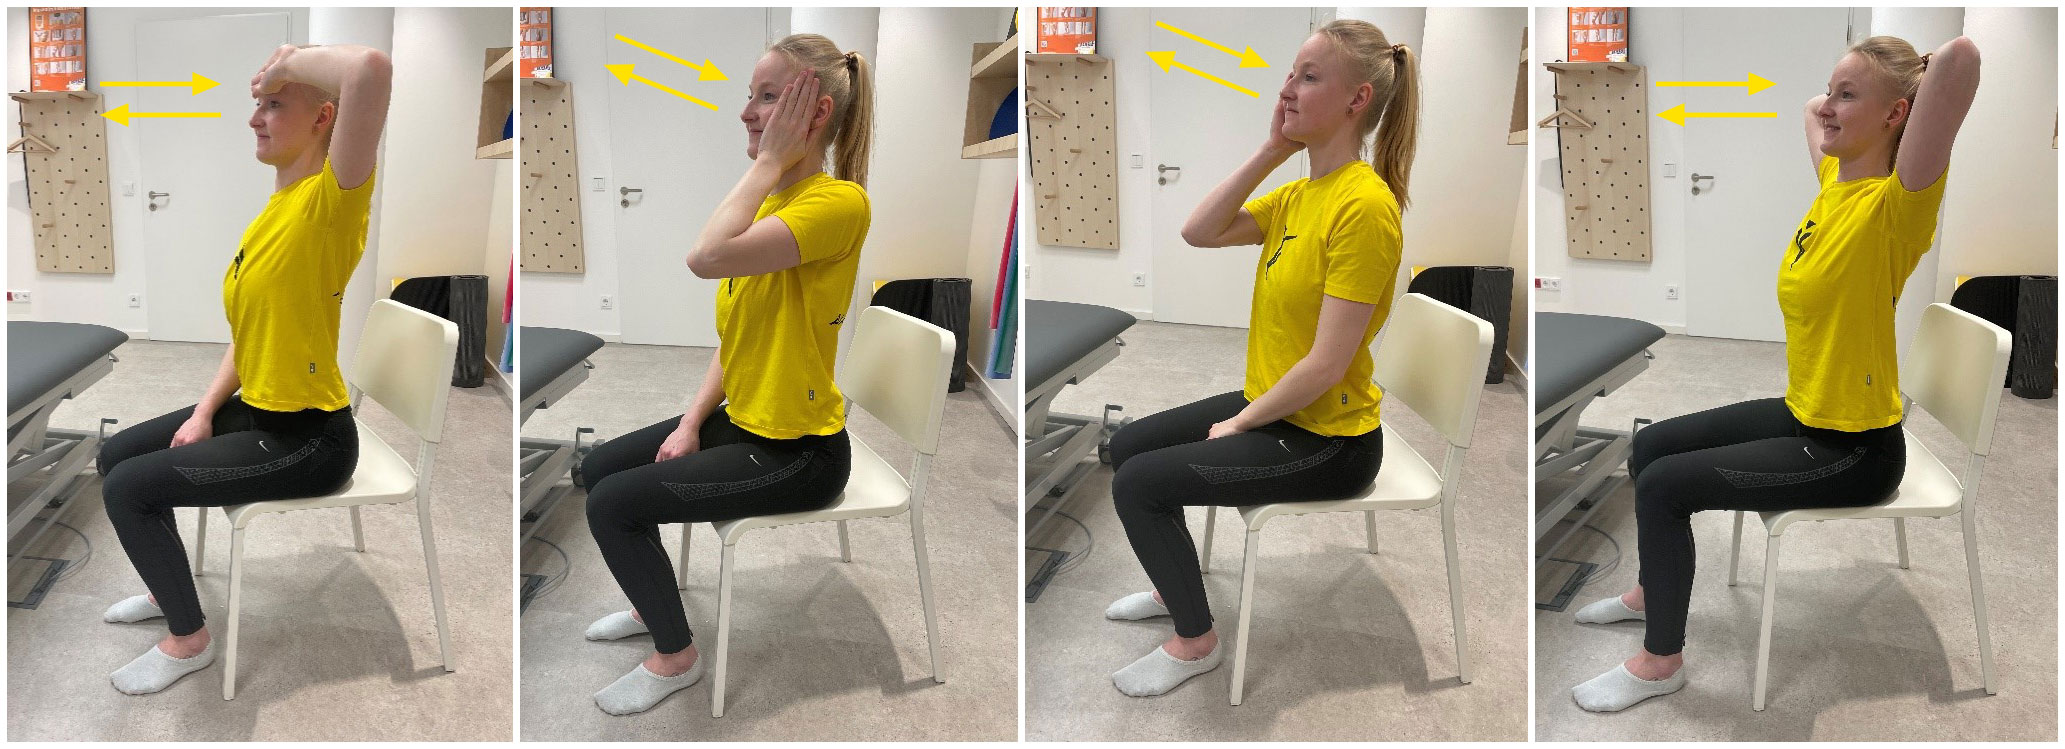 Frau zeigt in 4 Bildern Übungen zur Physiotherapie bei einem Bandschiebenvorfall 